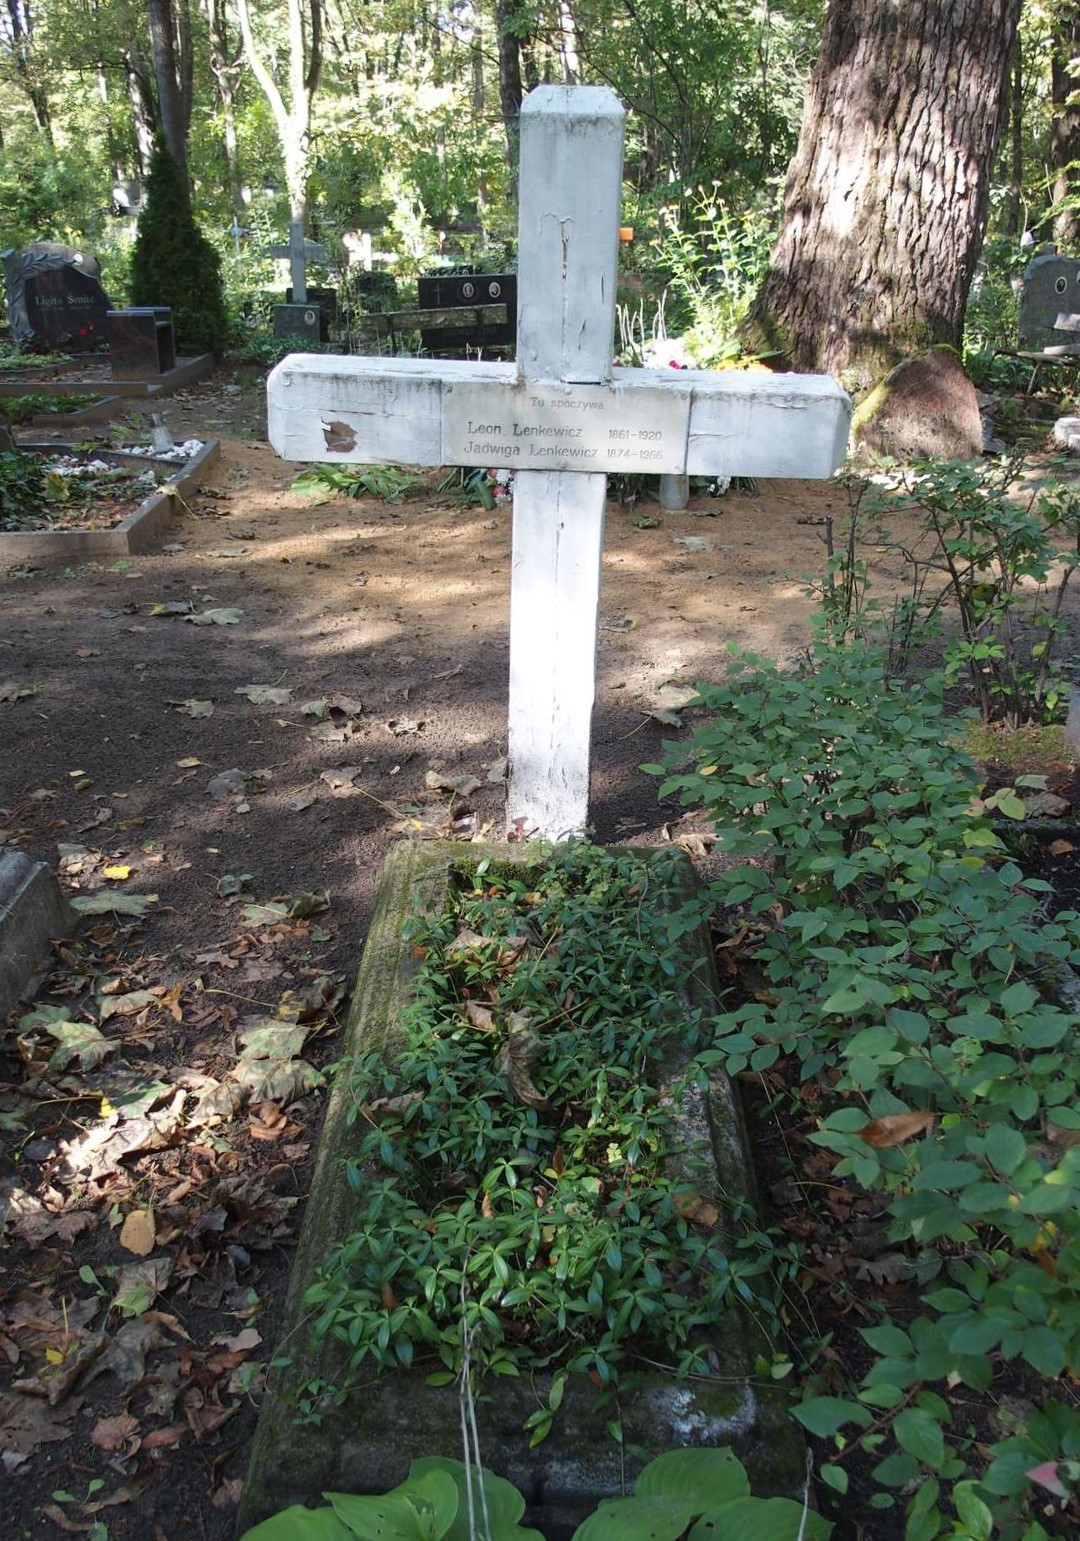 Tombstone of Jadwiga Lenkiewicz and Leon Lenkiewicz